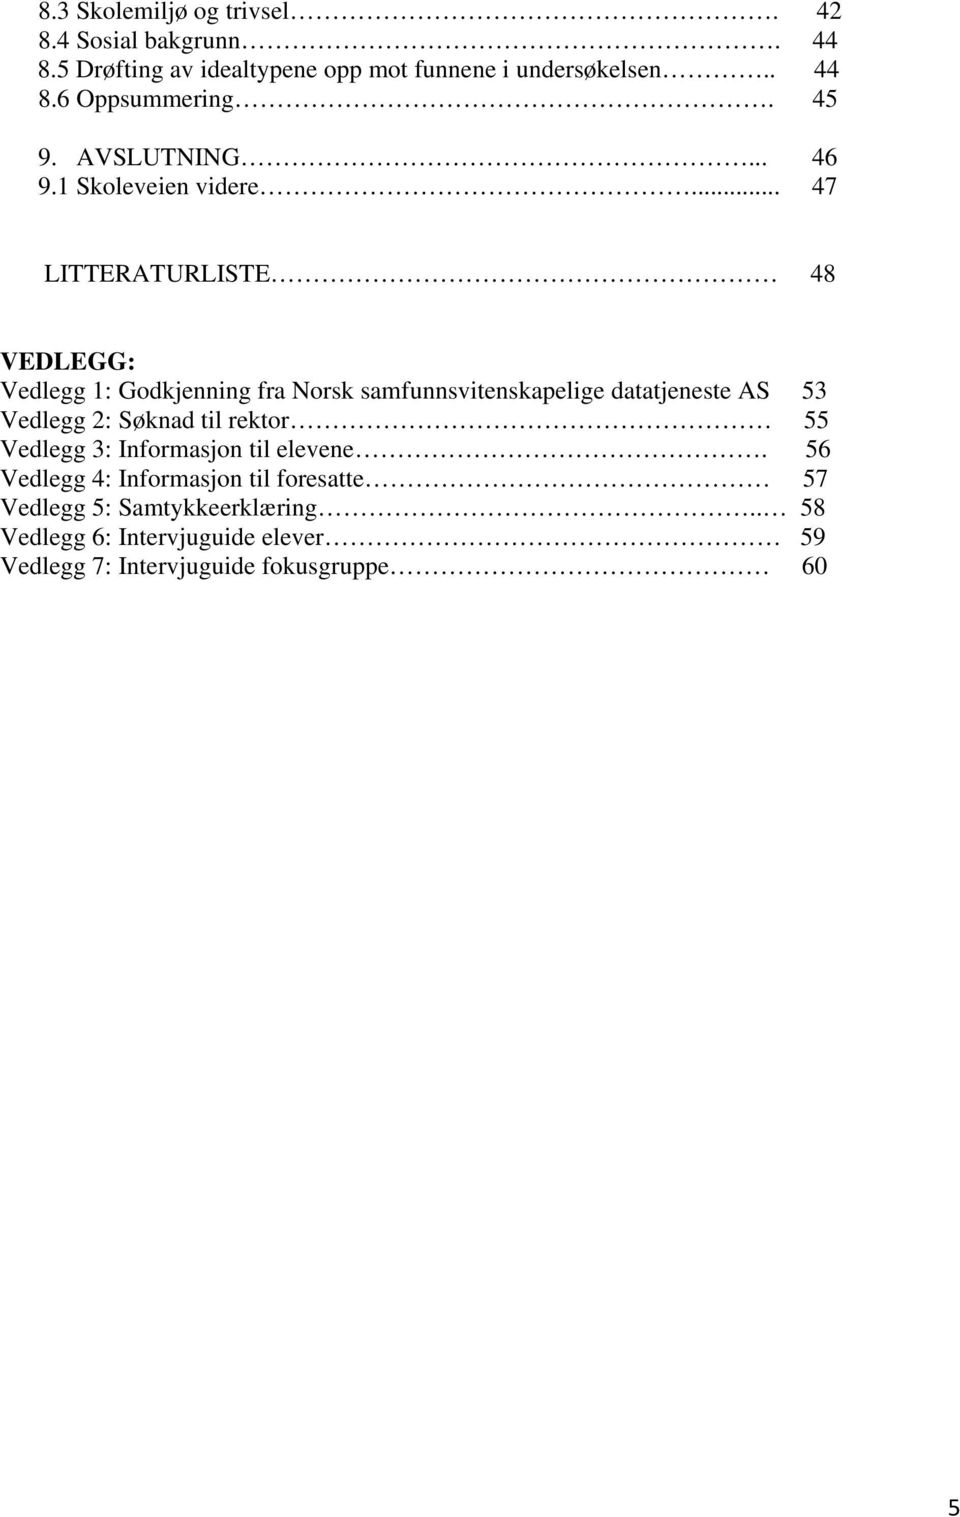 .. 47 LITTERATURLISTE 48 VEDLEGG: Vedlegg 1: Godkjenning fra Norsk samfunnsvitenskapelige datatjeneste AS 53 Vedlegg 2: Søknad